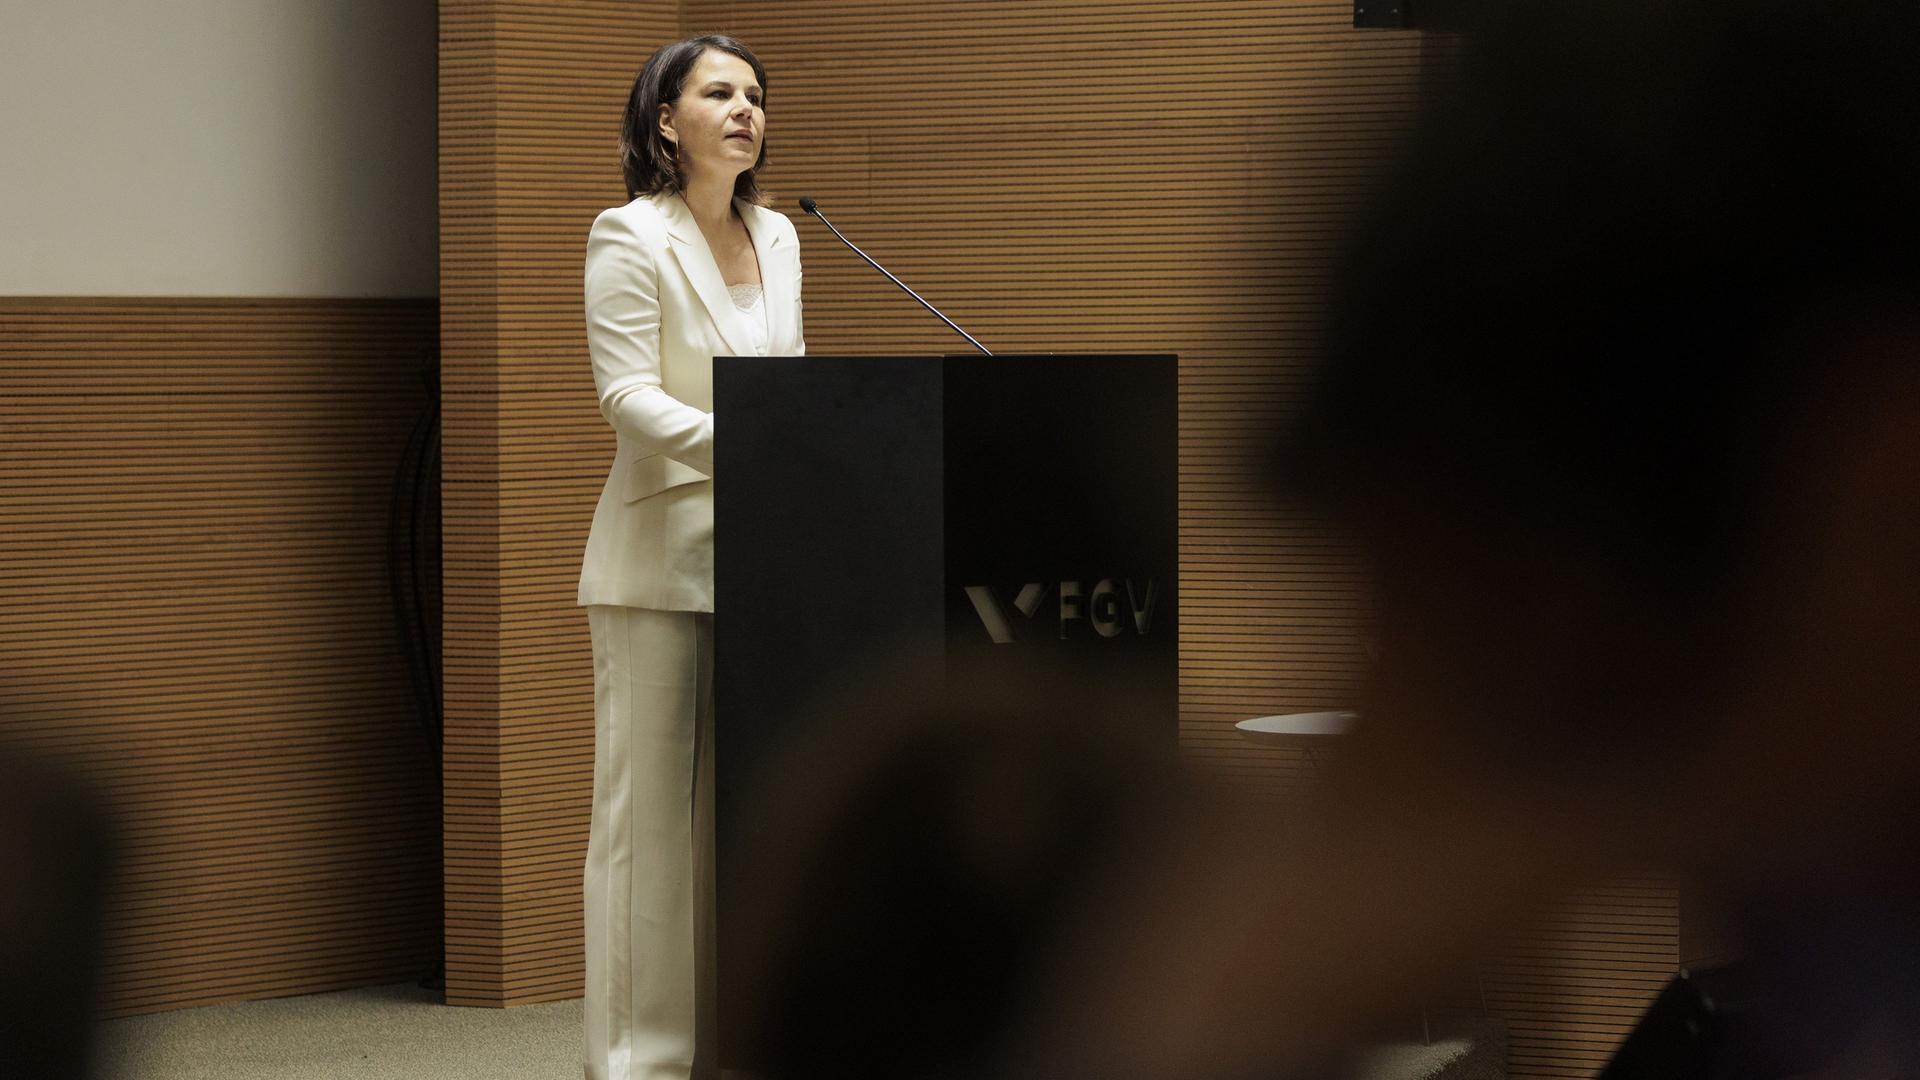 Annalena Baerbock, Bundesaussenministerin, aufgenommen im Rahmen einer Rede bei der Veranstaltung "Demokratie und Digitalisierung" der Fundacao Getulio Vargas (FGV) in Sao Paulo.